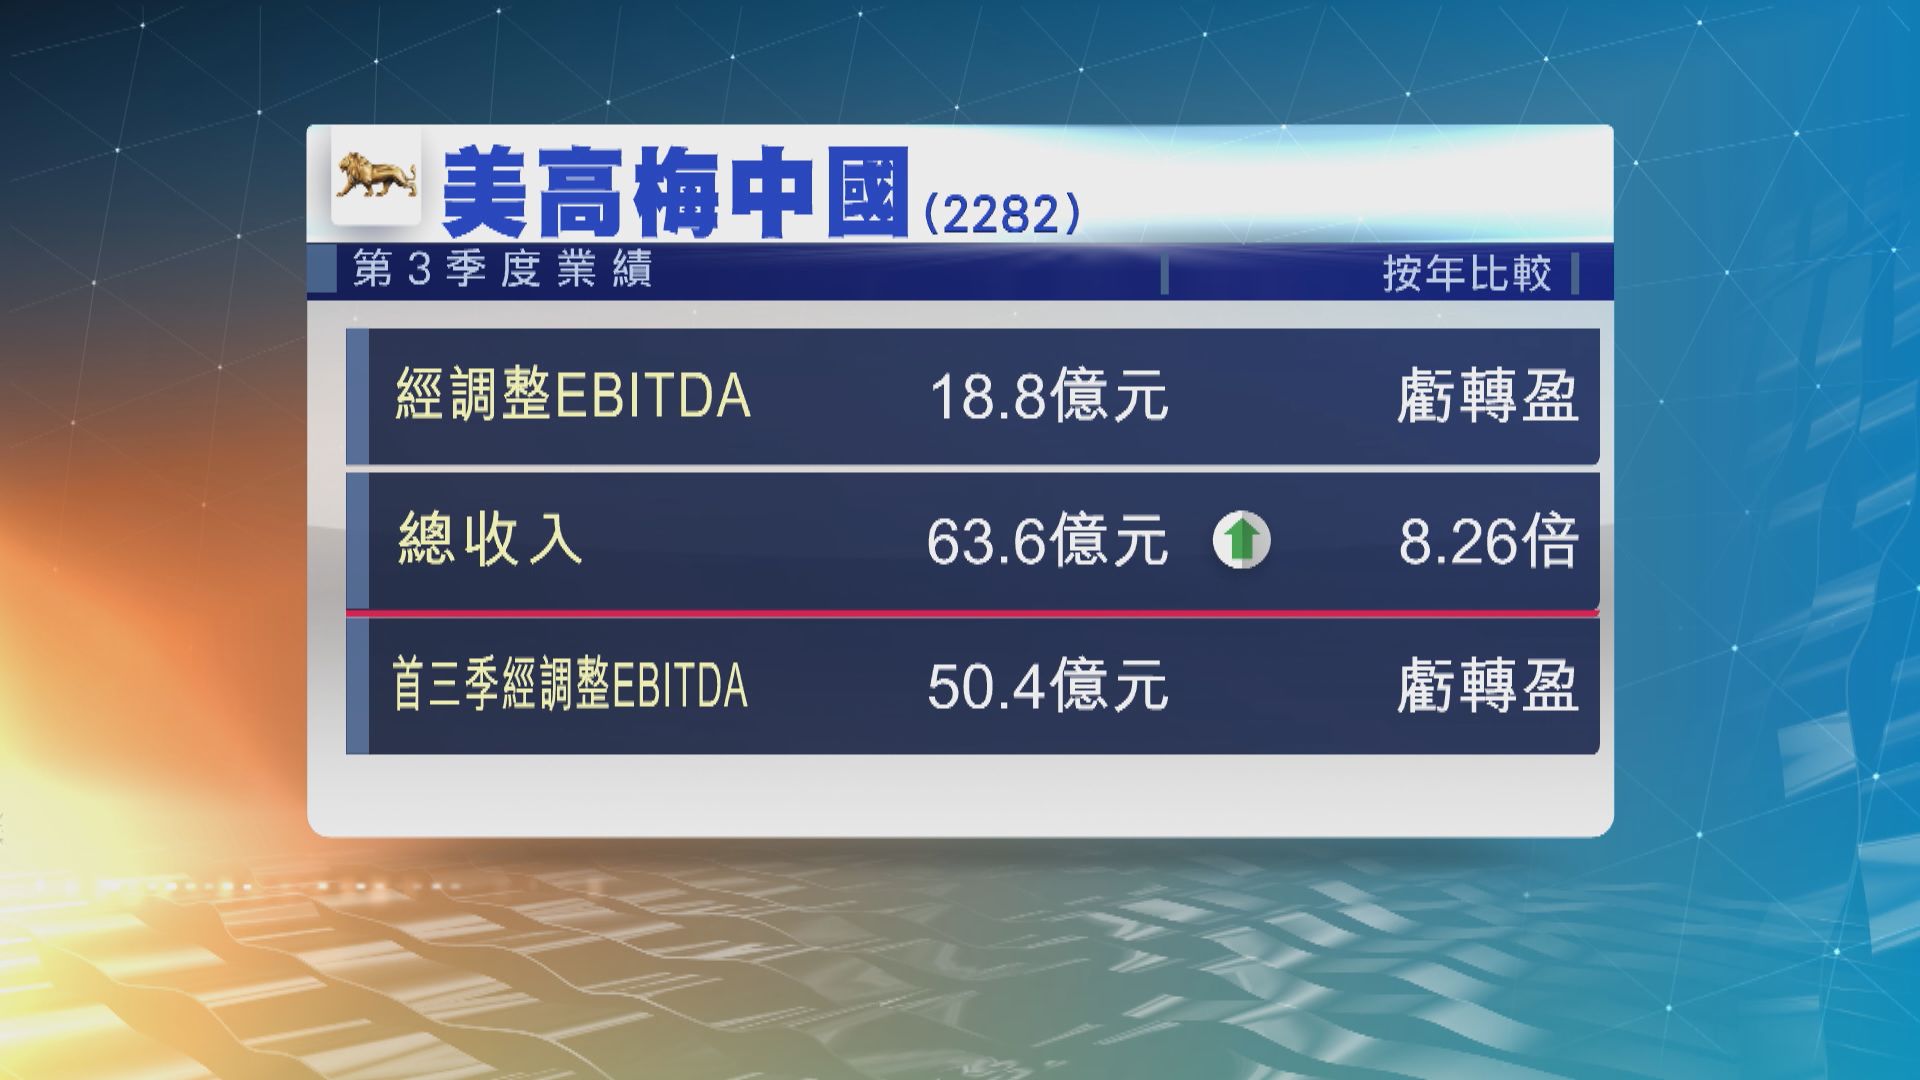 美高梅中國上季經調整EBITDA 18.8億元 虧轉盈